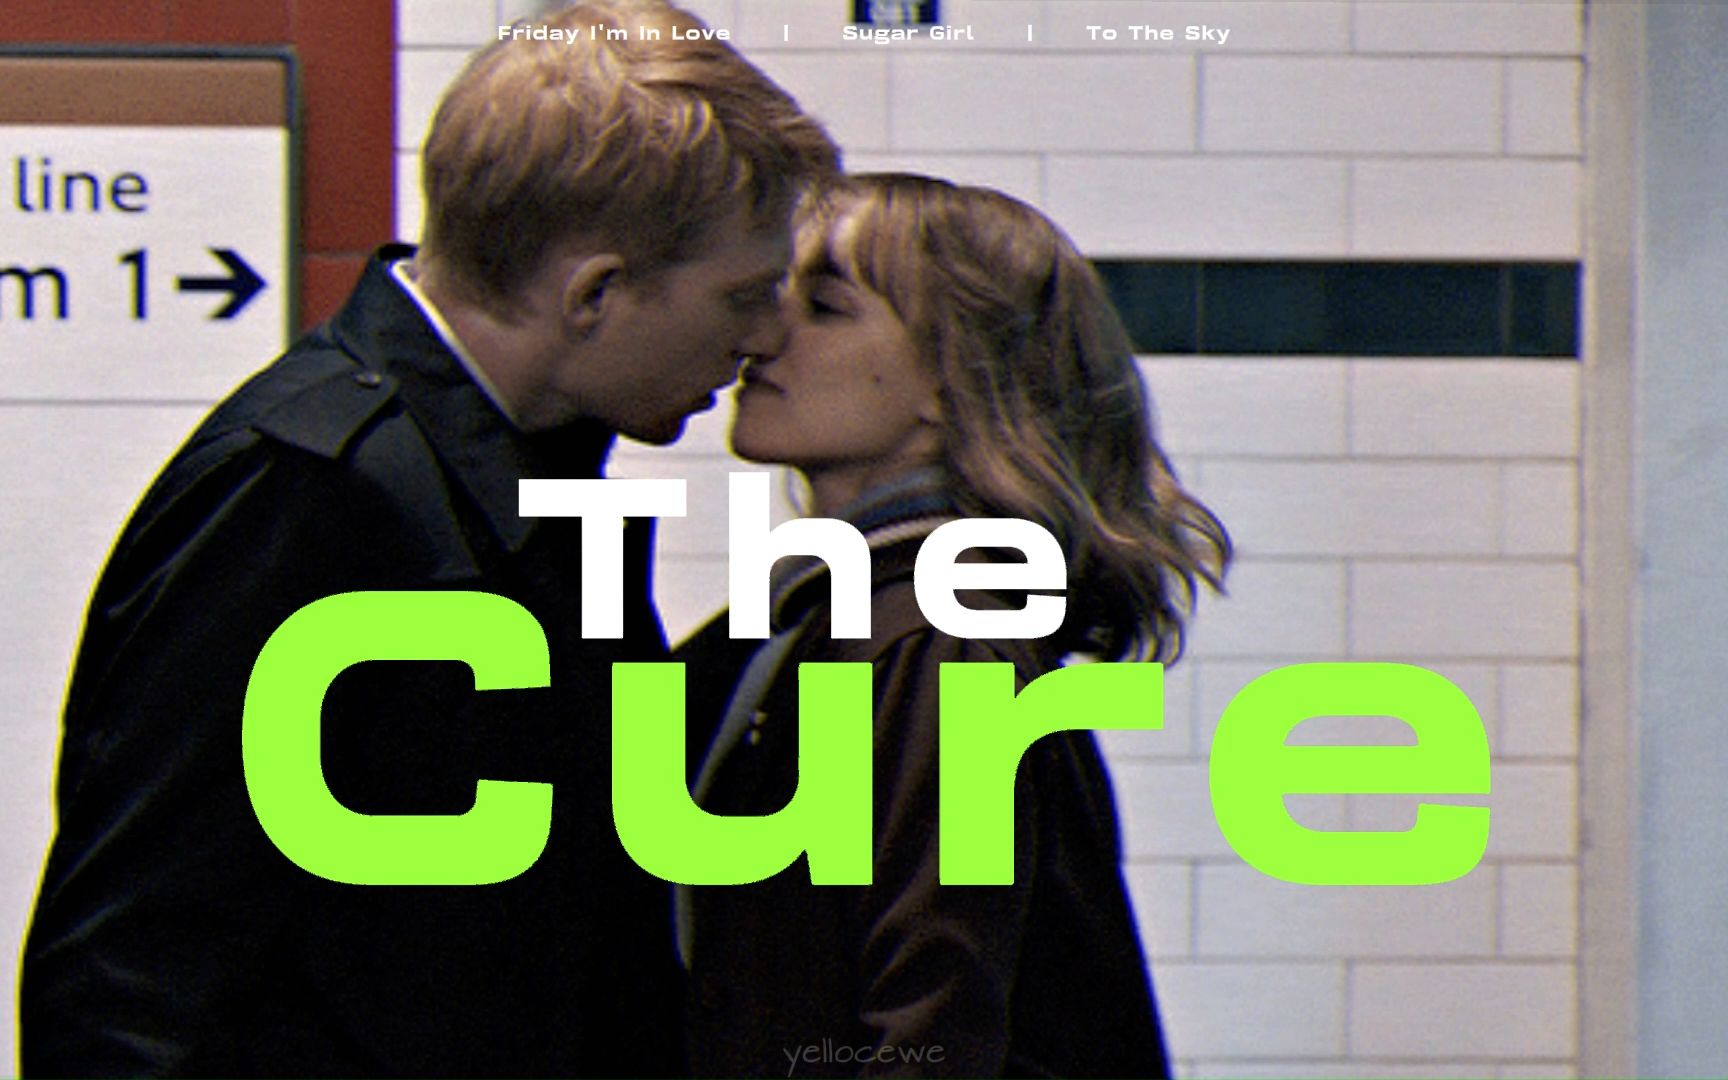 𝐏𝐥𝐚𝐲𝐥𝐢𝐬𝐭 “周五周五敲锣打鼓” 英国乐队The Cure | 英摇是情绪治疗的解药